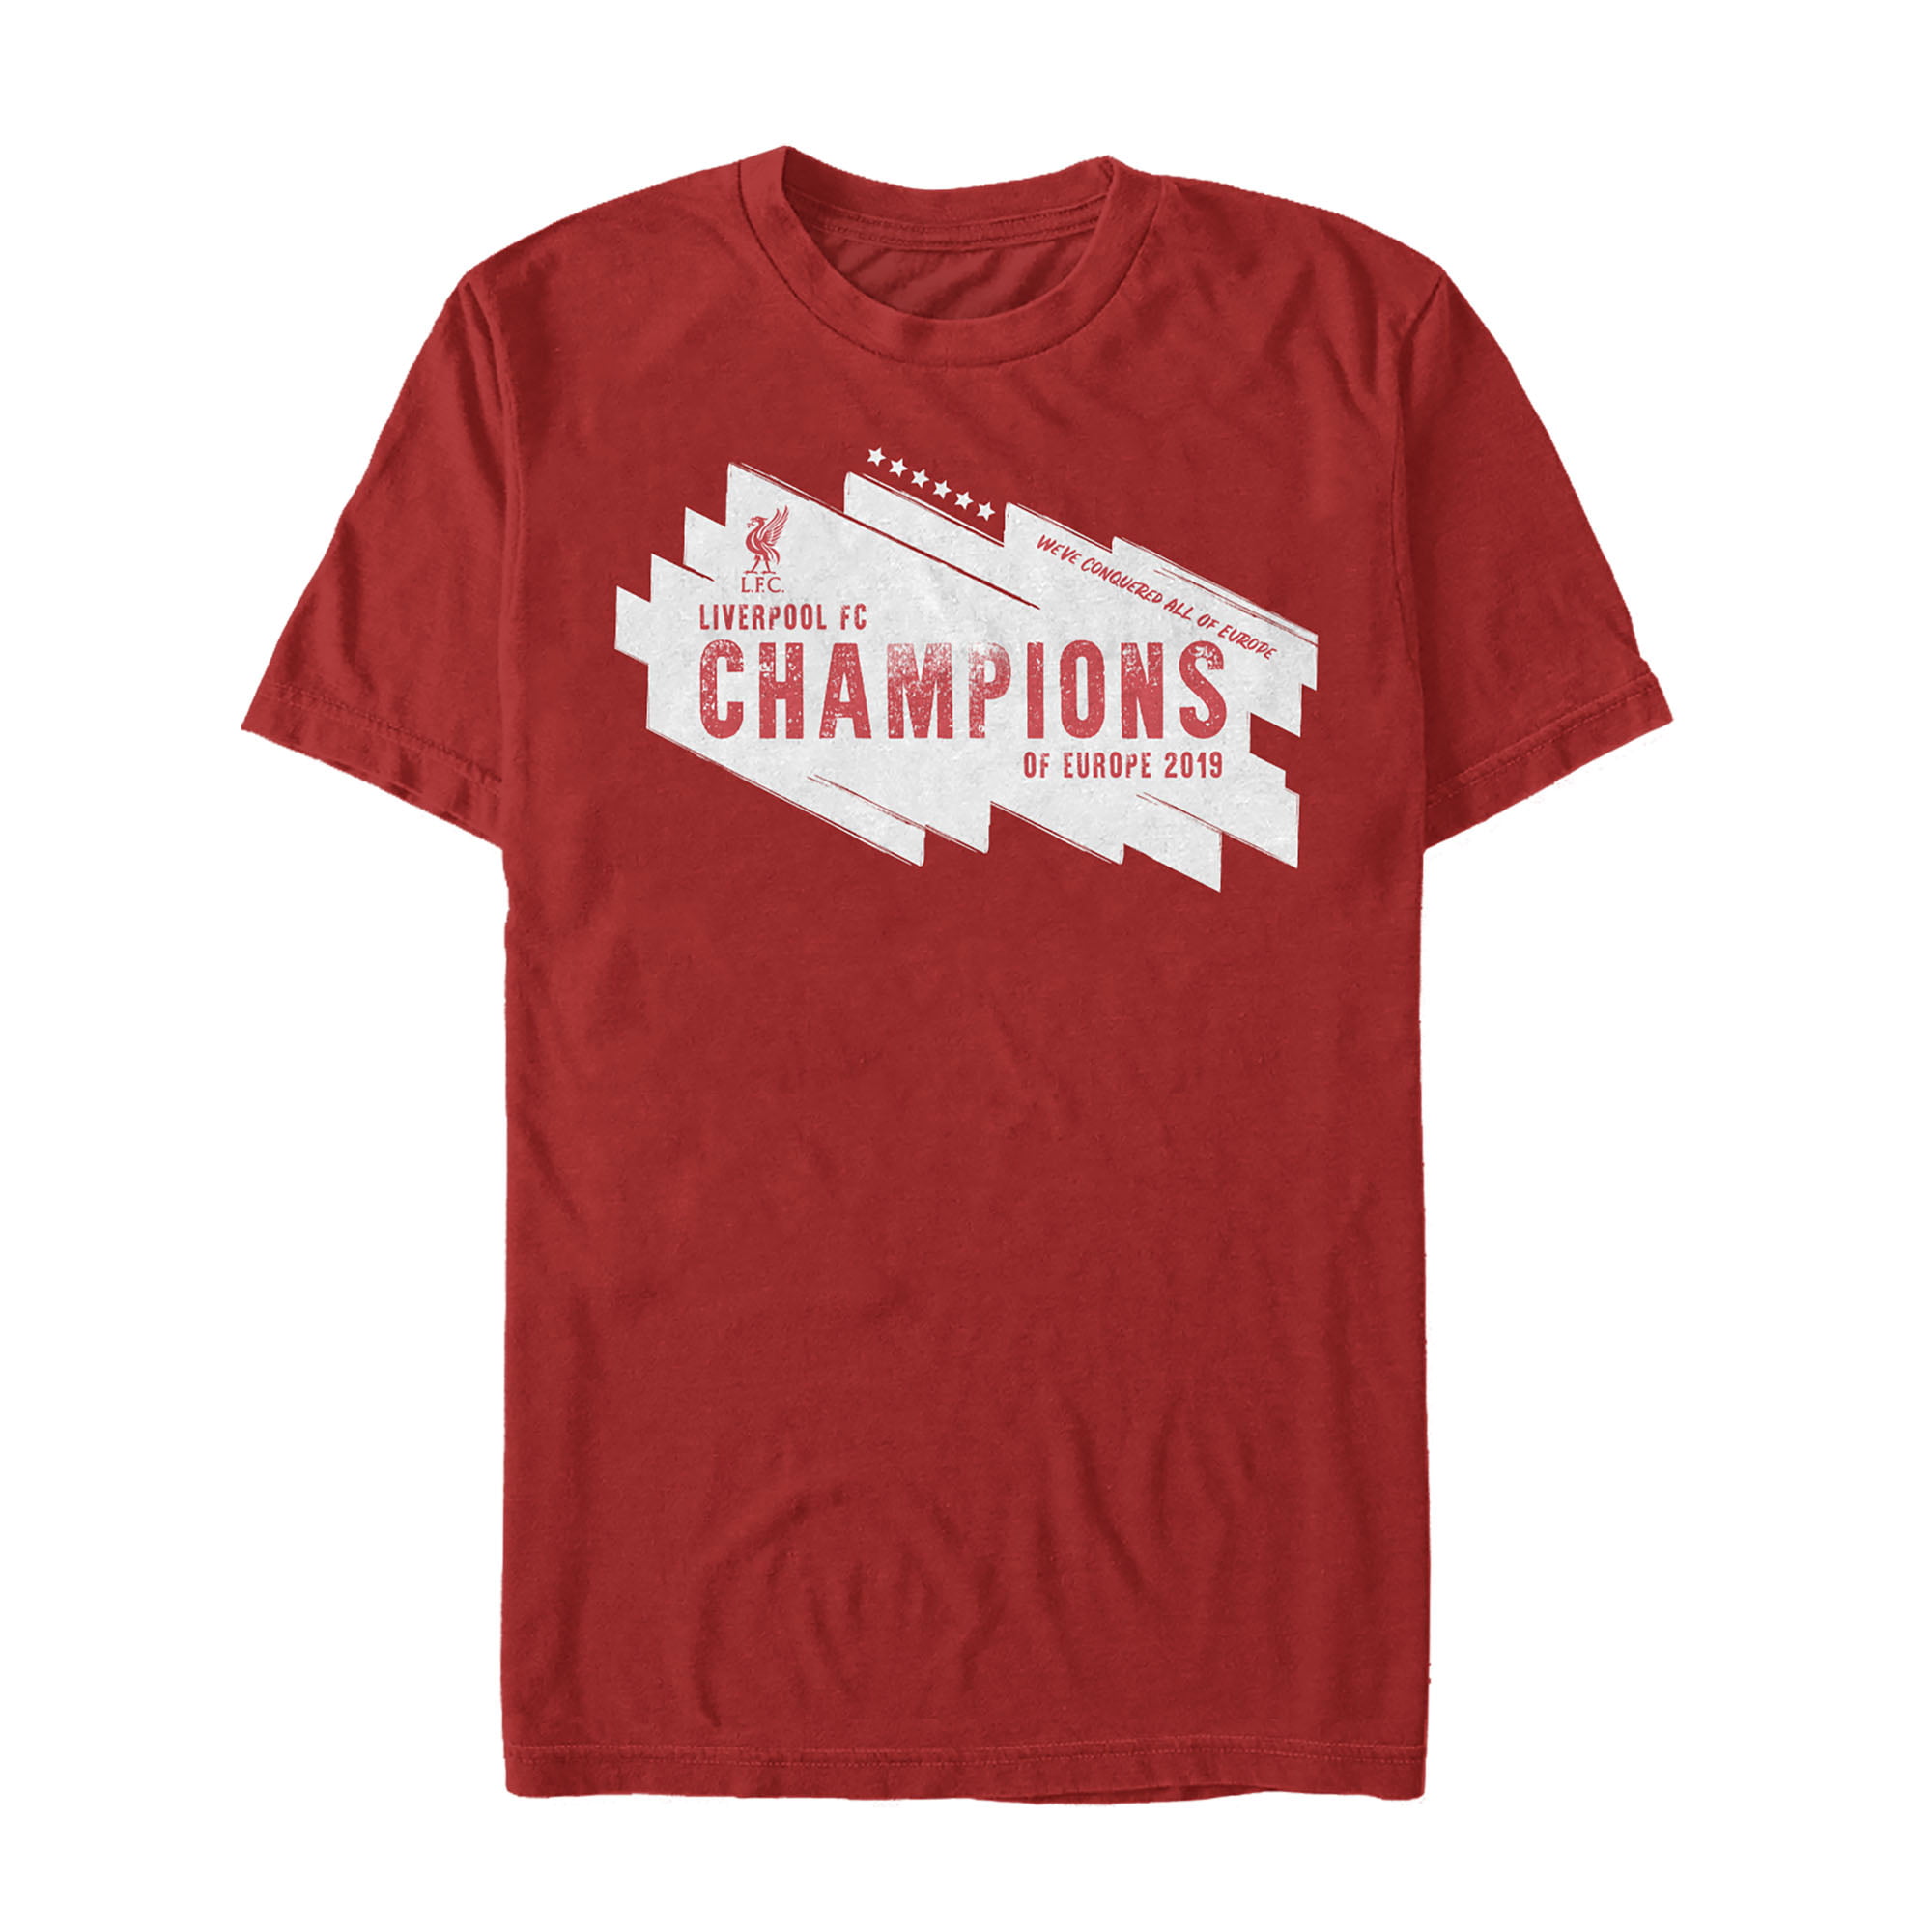 Liverpool Football Club Fan Football Printed Retro T Shirt Champions of Europe 